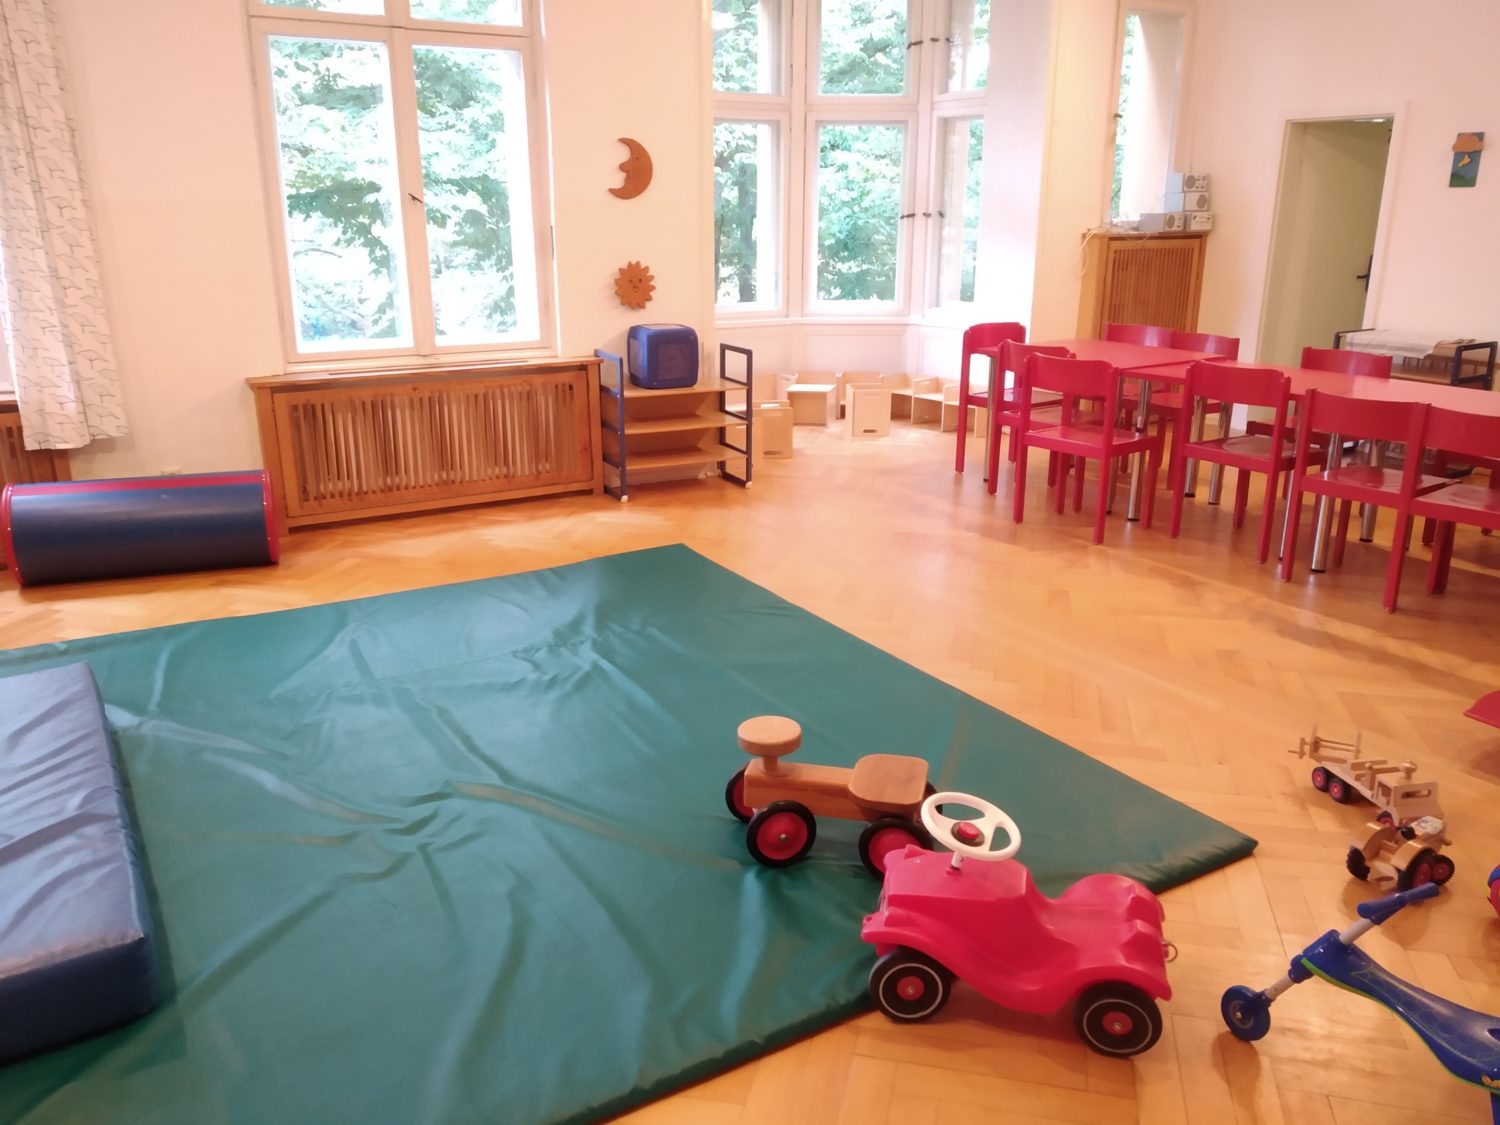 Tipps für Eltern mit Kindern von 0 bis 3 Jahren Die denkmalgeschützte Kindervilla in Neukölln bietet Spielspaß – schon für die Allerkleinsten.